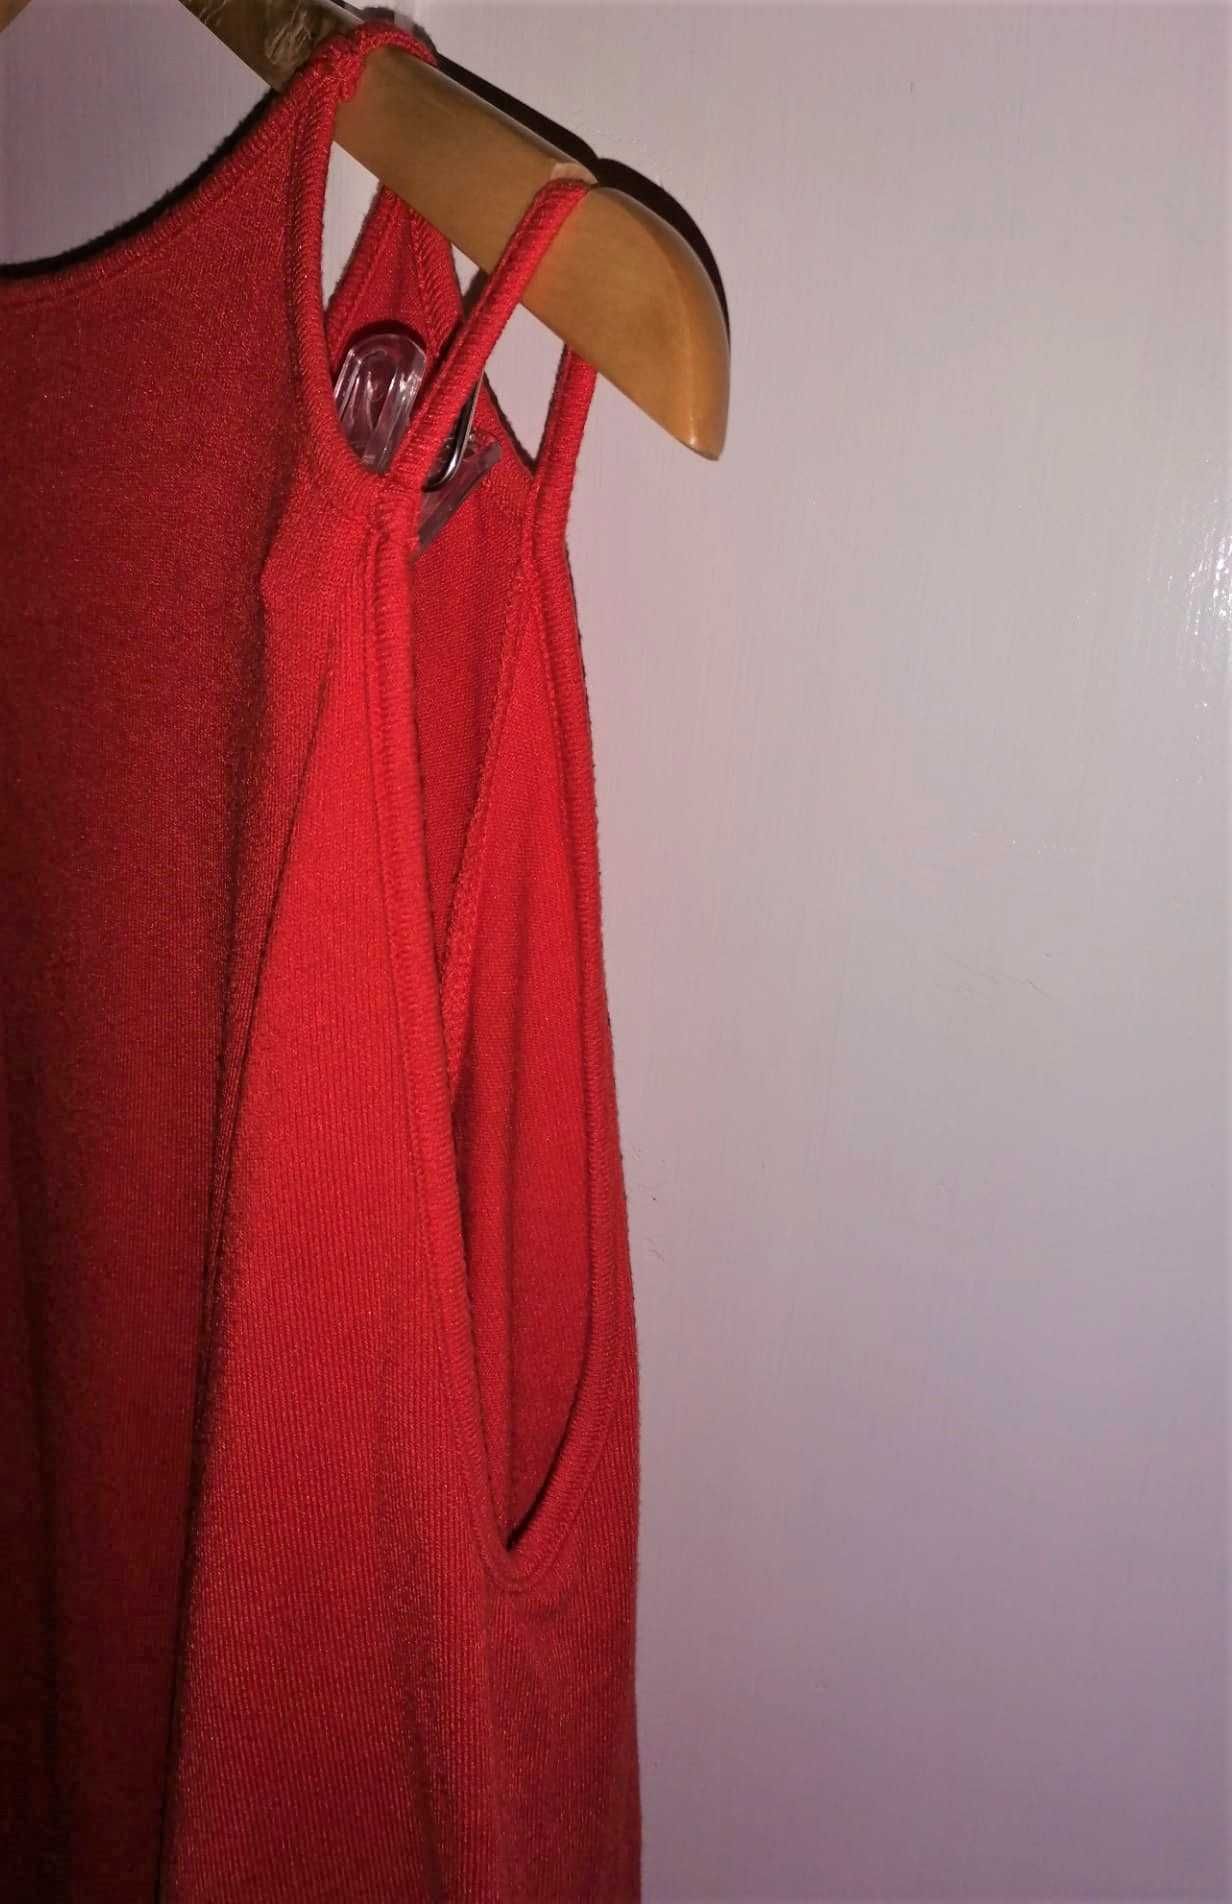 Vestido vermelho Pull&Bear - Tamanho L